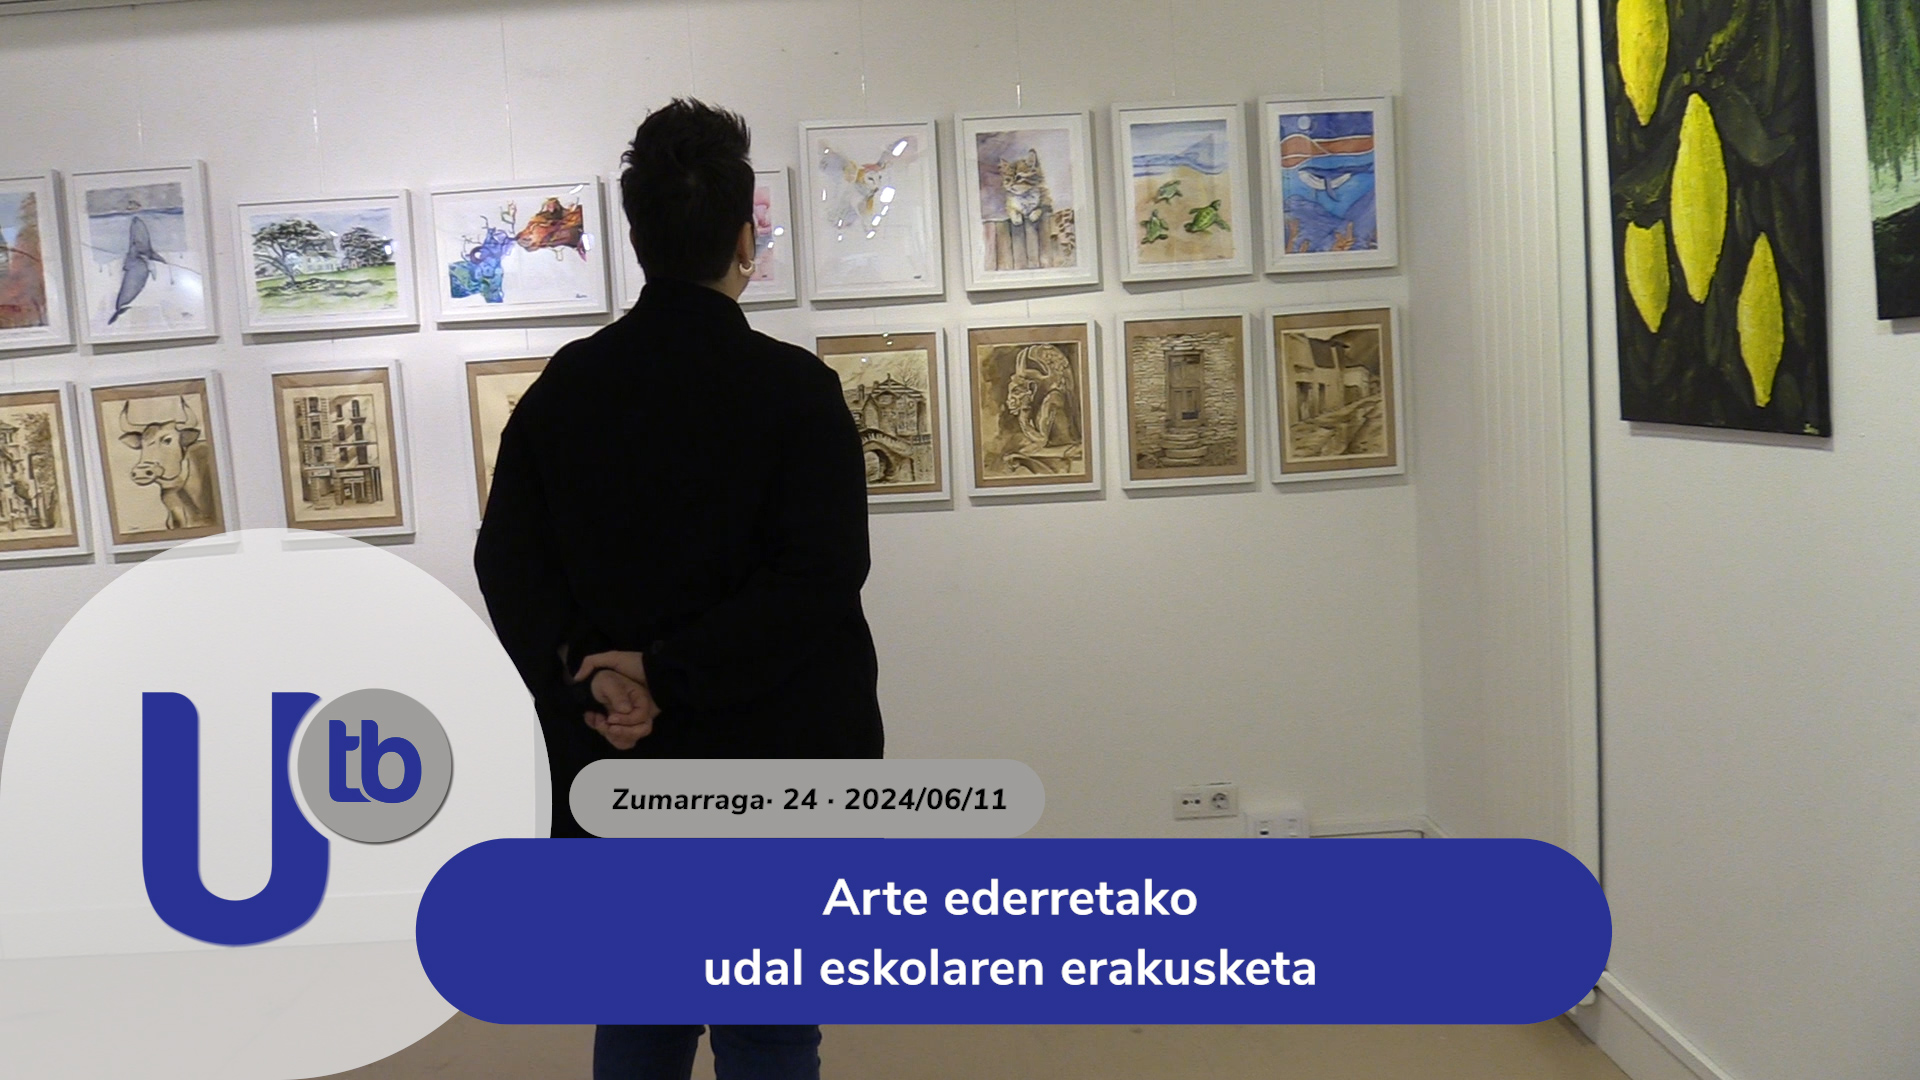 Exposición de la escuela municipal de bellas artes / Arte ederretako udal eskolaren erakusketa